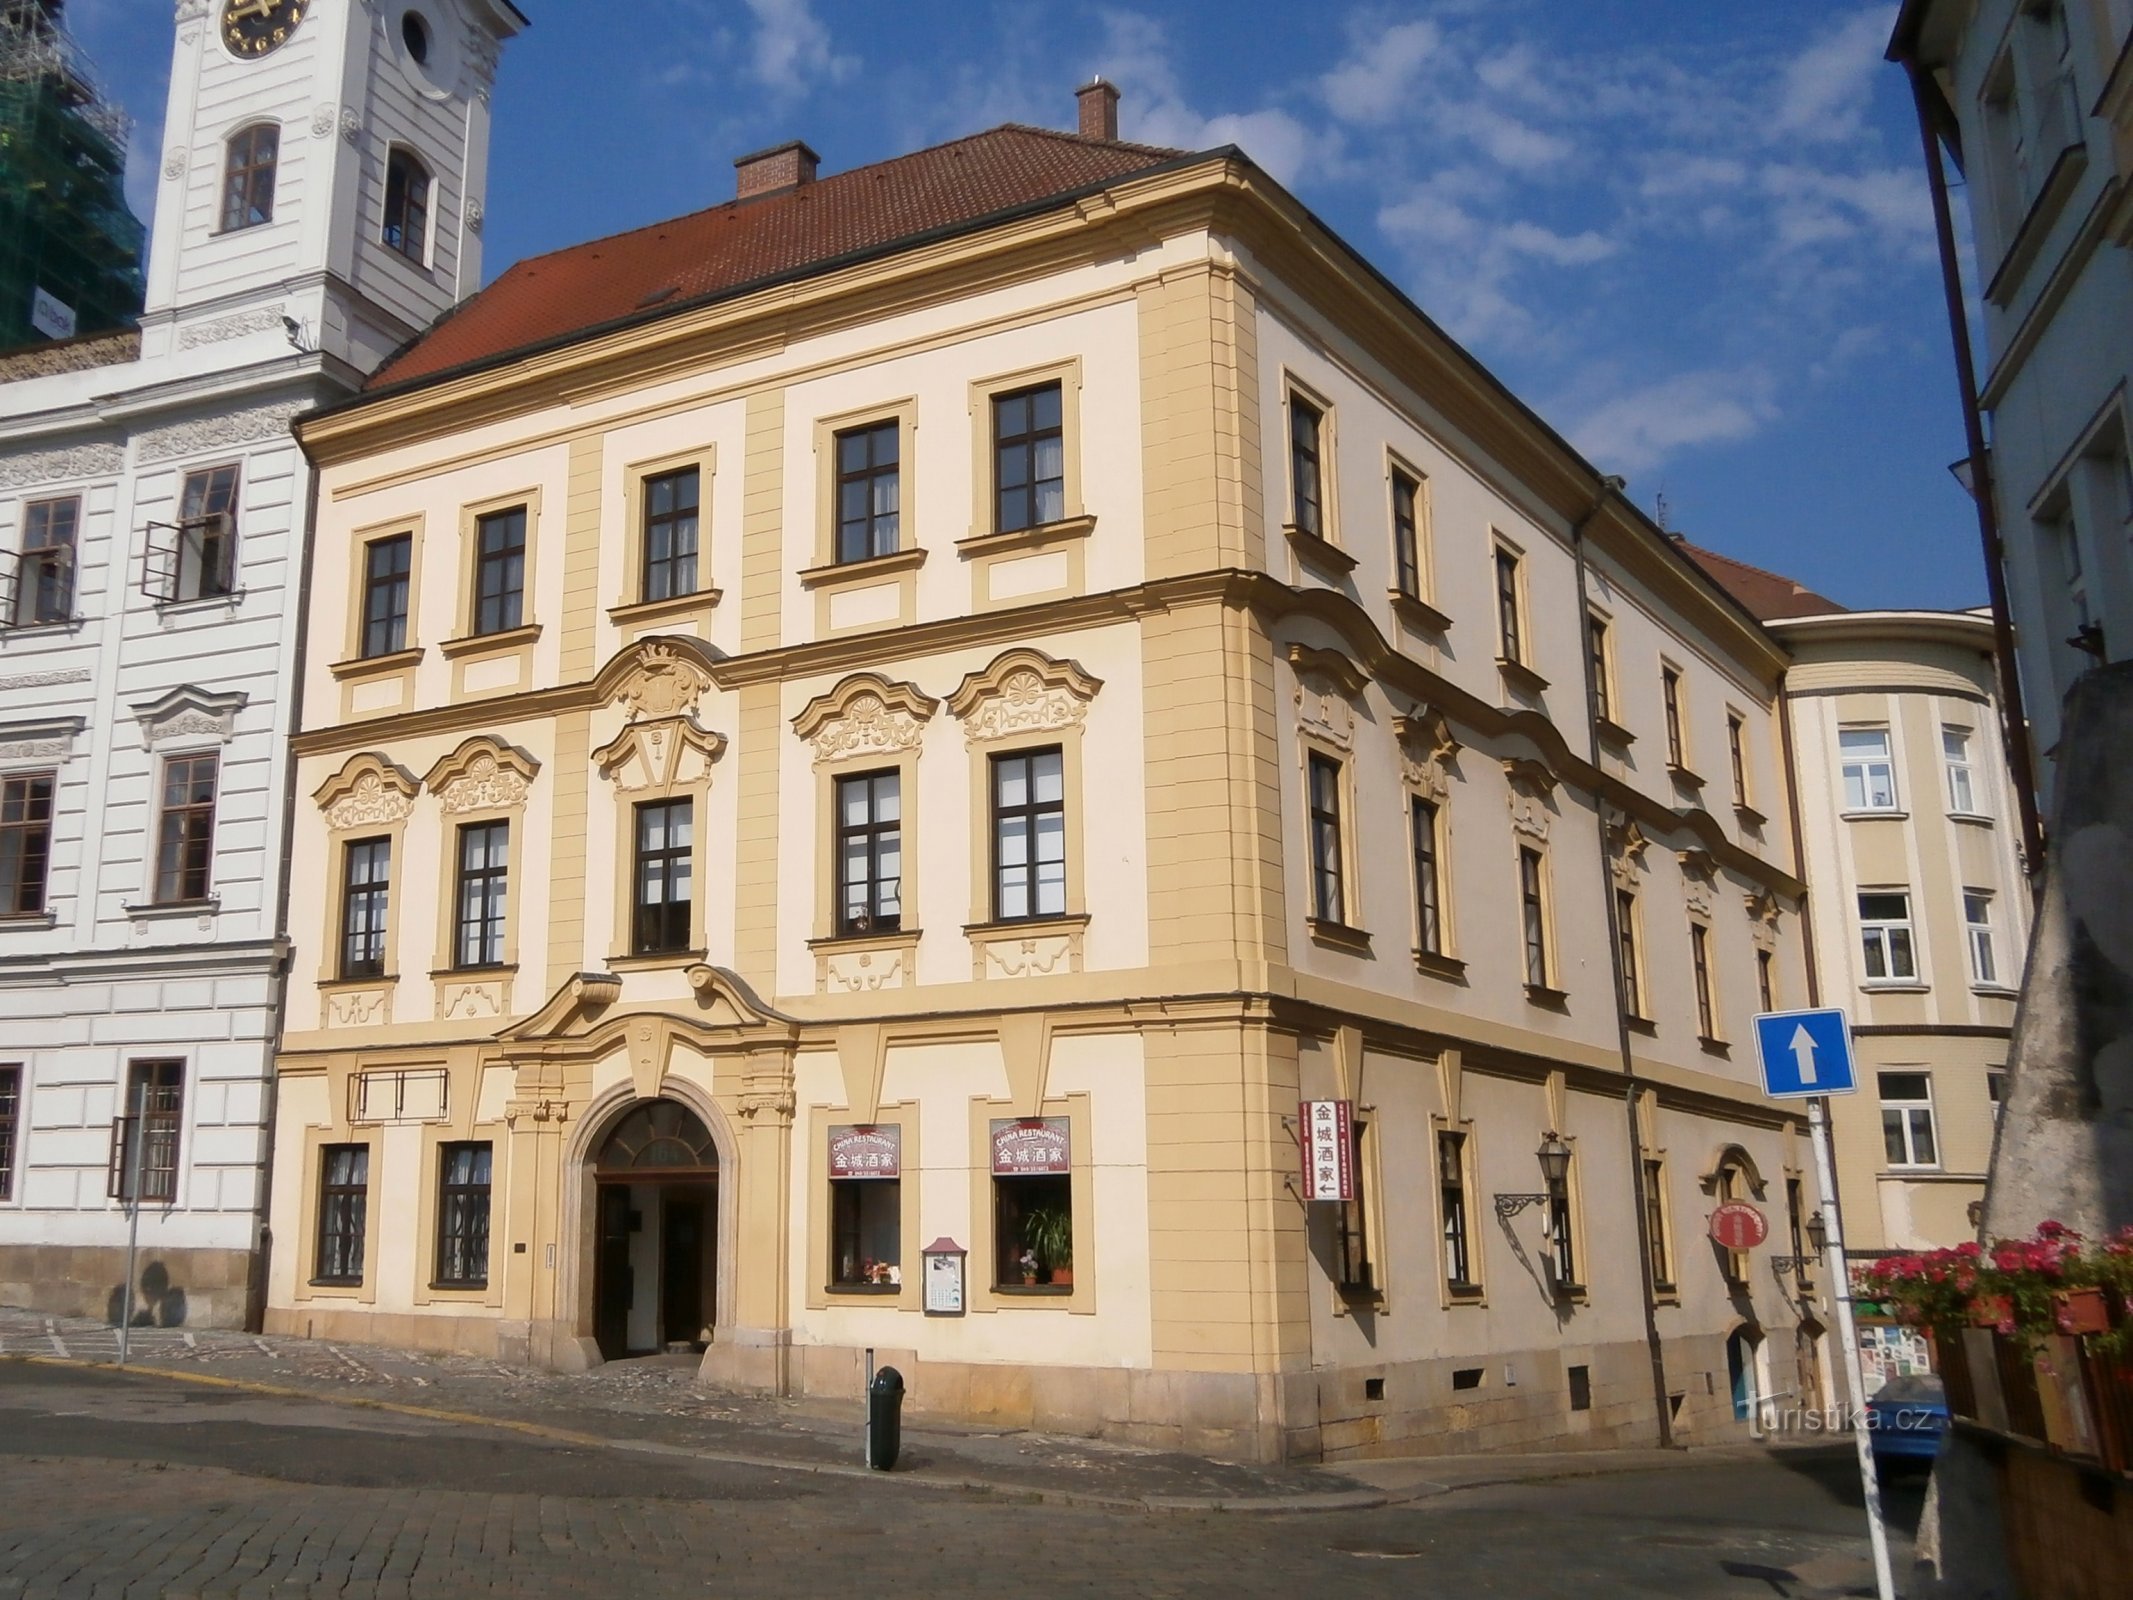 Velké náměstí số 164 (Hradec Králové, ngày 8.7.2014 tháng XNUMX năm XNUMX)